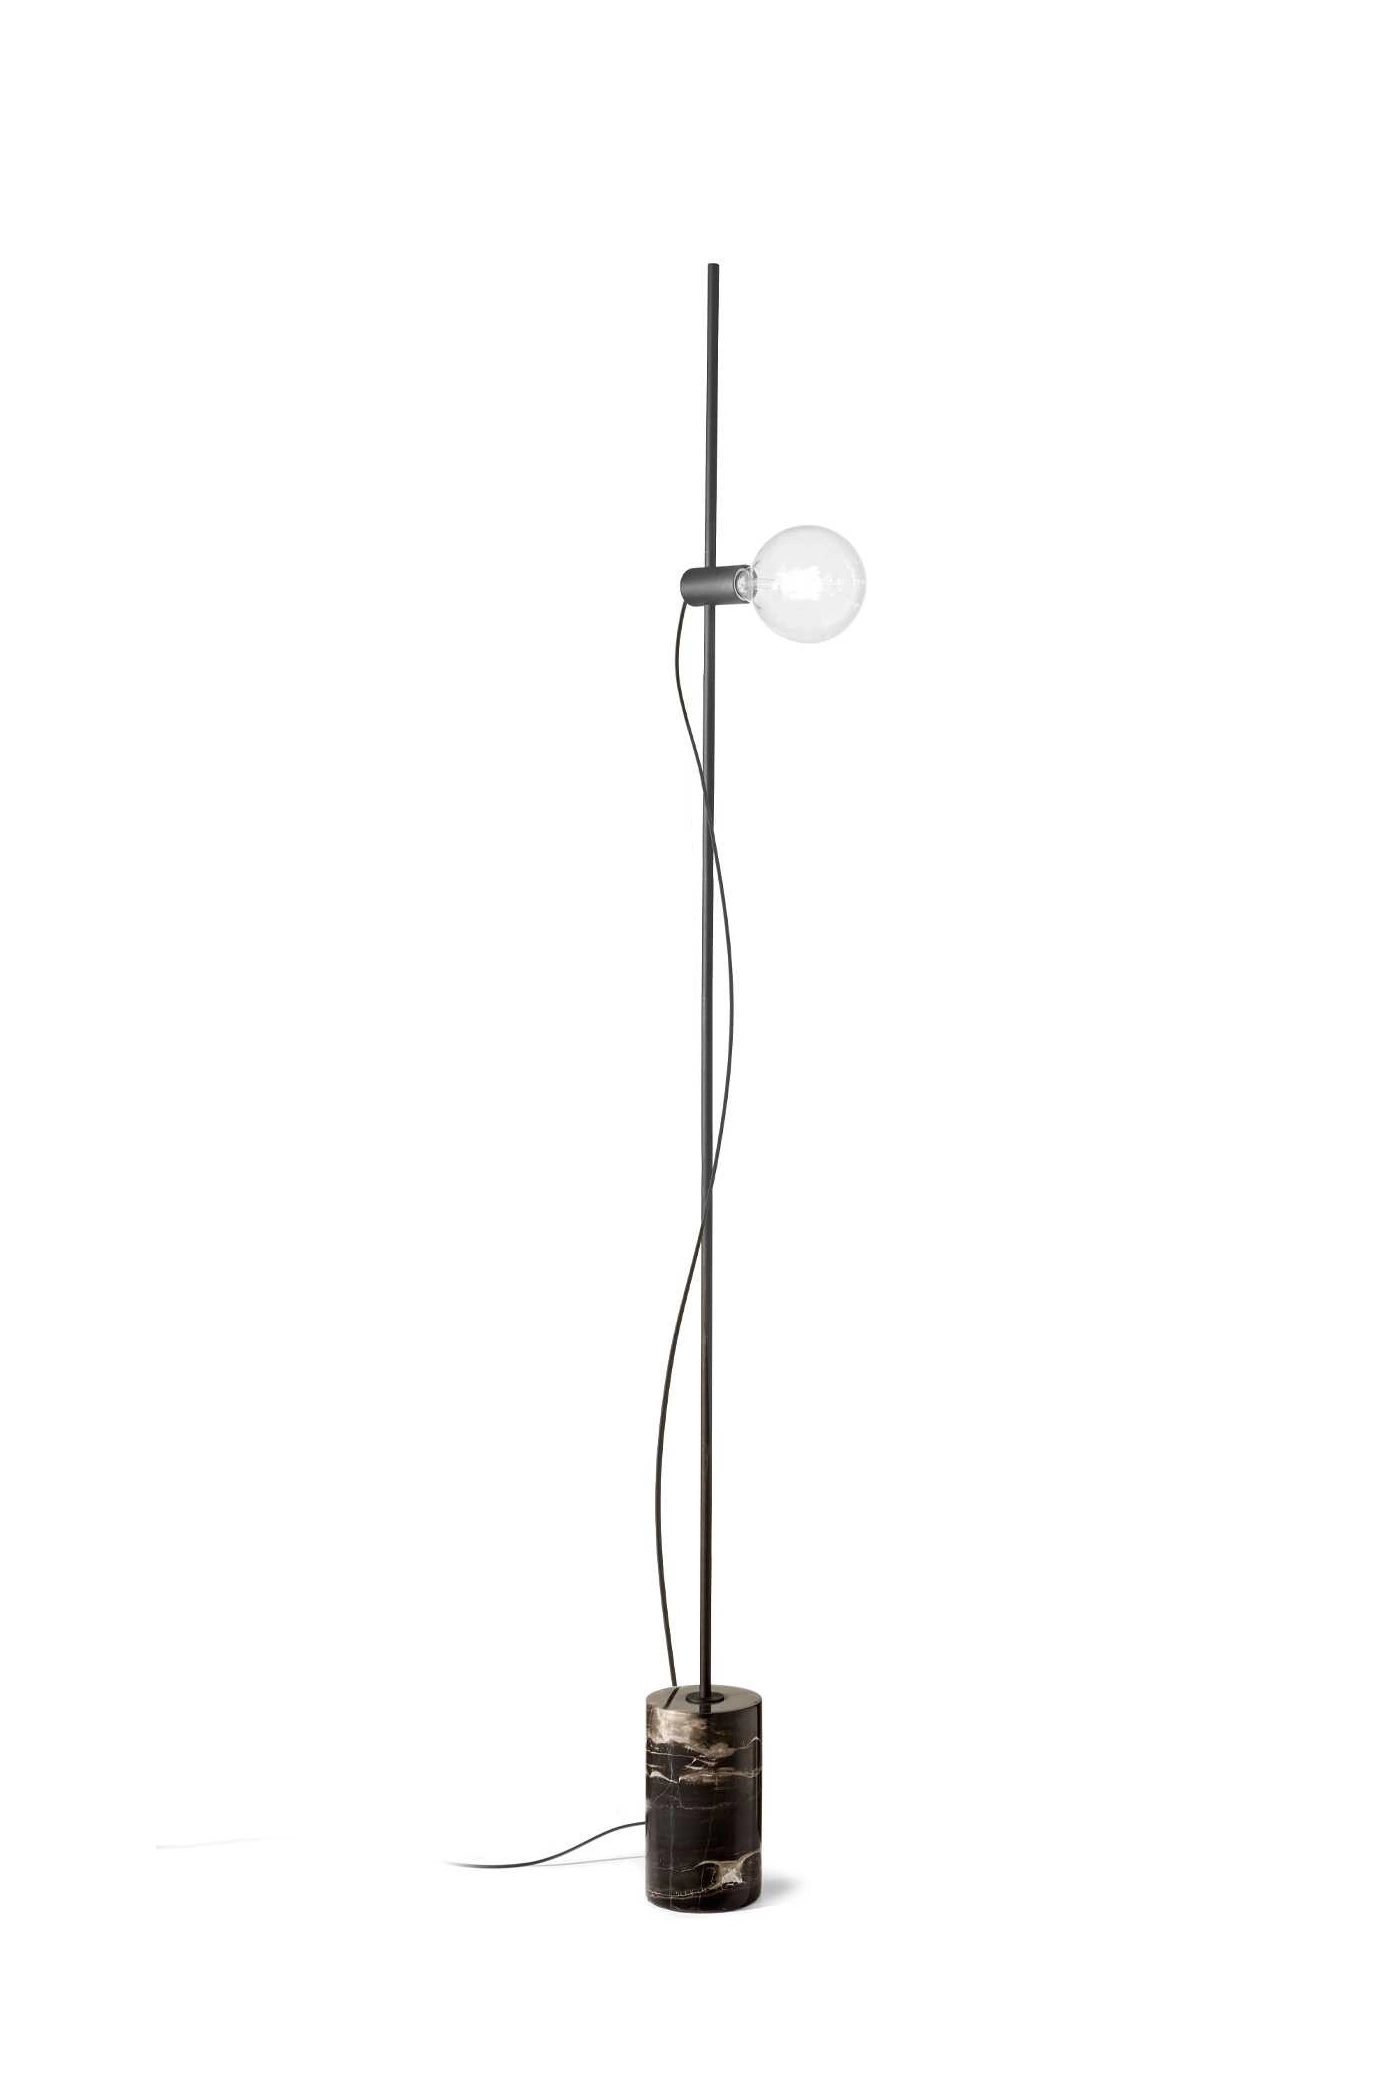   
                        
                        Торшер IDEAL LUX (Италия) 10243    
                         в стиле Лофт.  
                        Тип источника света: светодиодная лампа, сменная.                                                                                                  фото 1